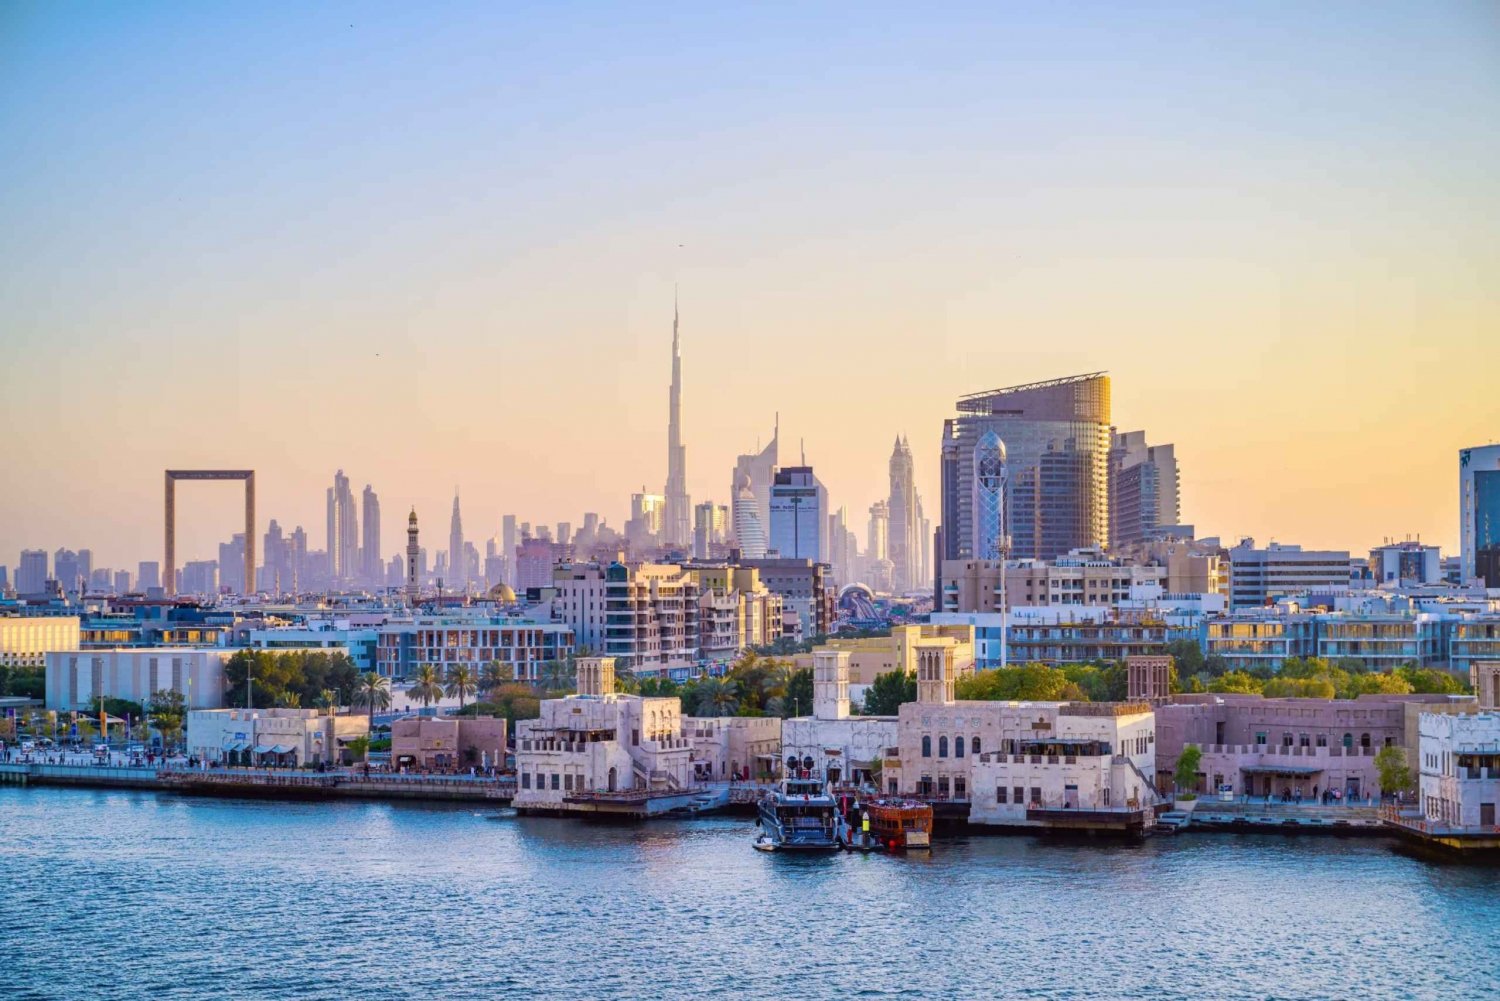 Dubai antiga: Excursão a pé com passeio de barco, souks e museus